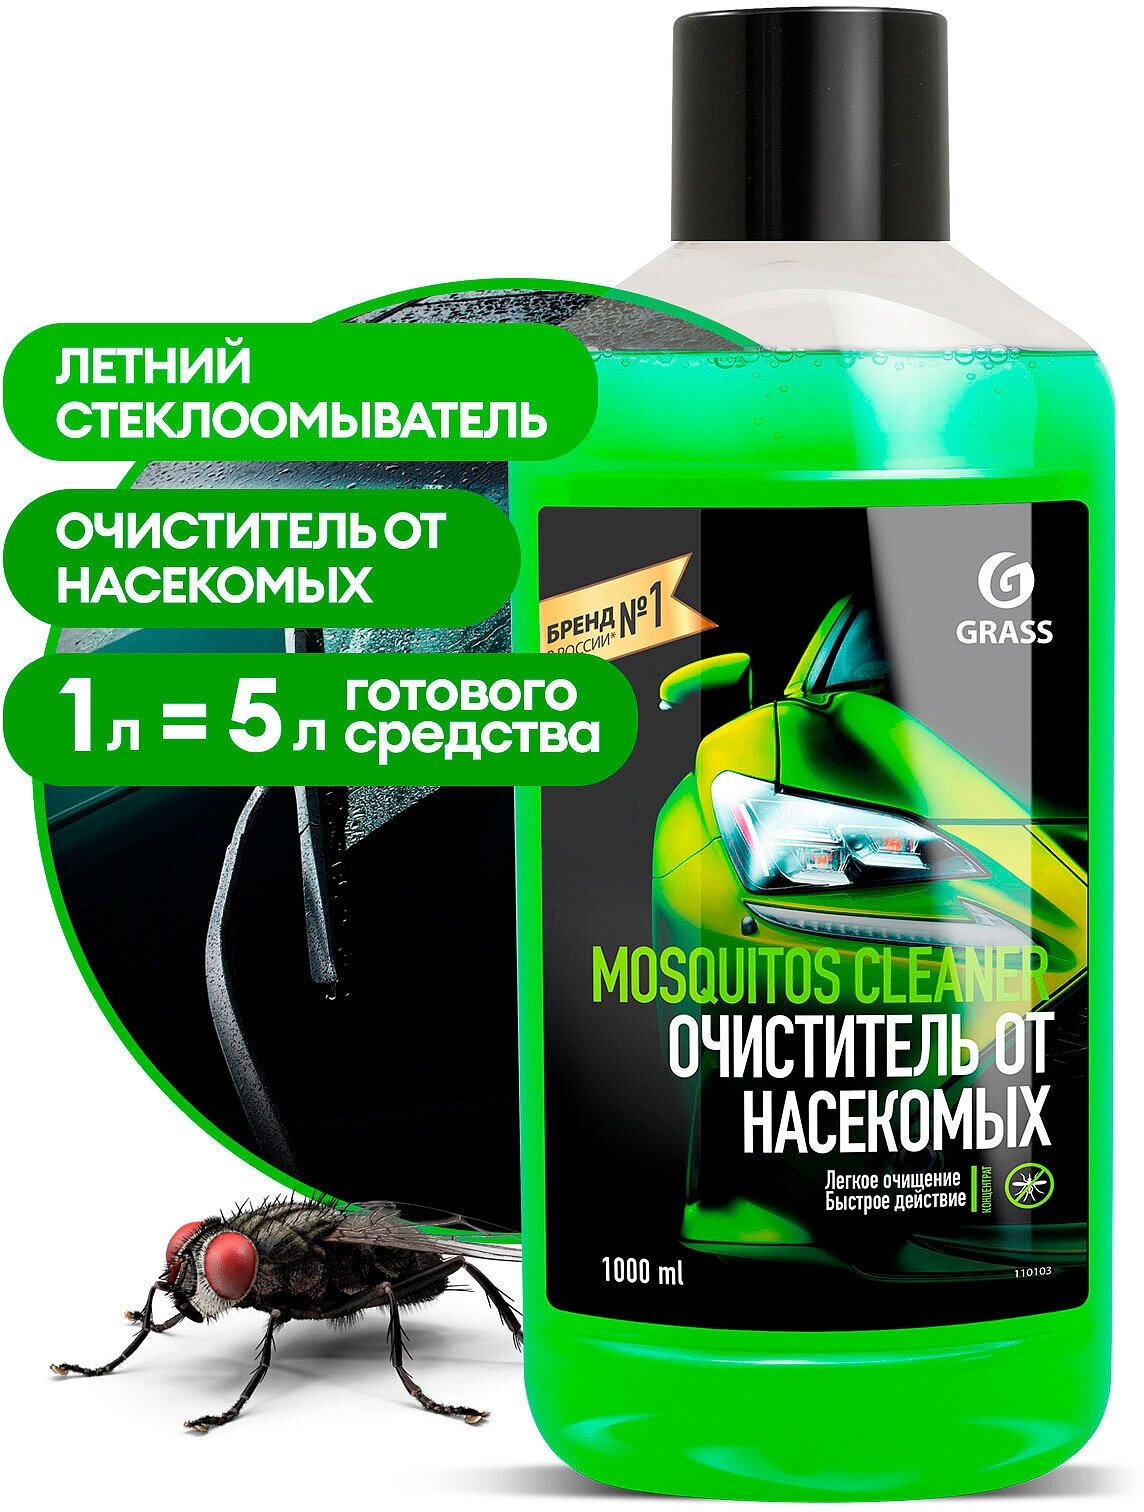 Концентрат летнего стеклоочистителя на 5л GRASS Mosquitos Cleaner 1л (16)